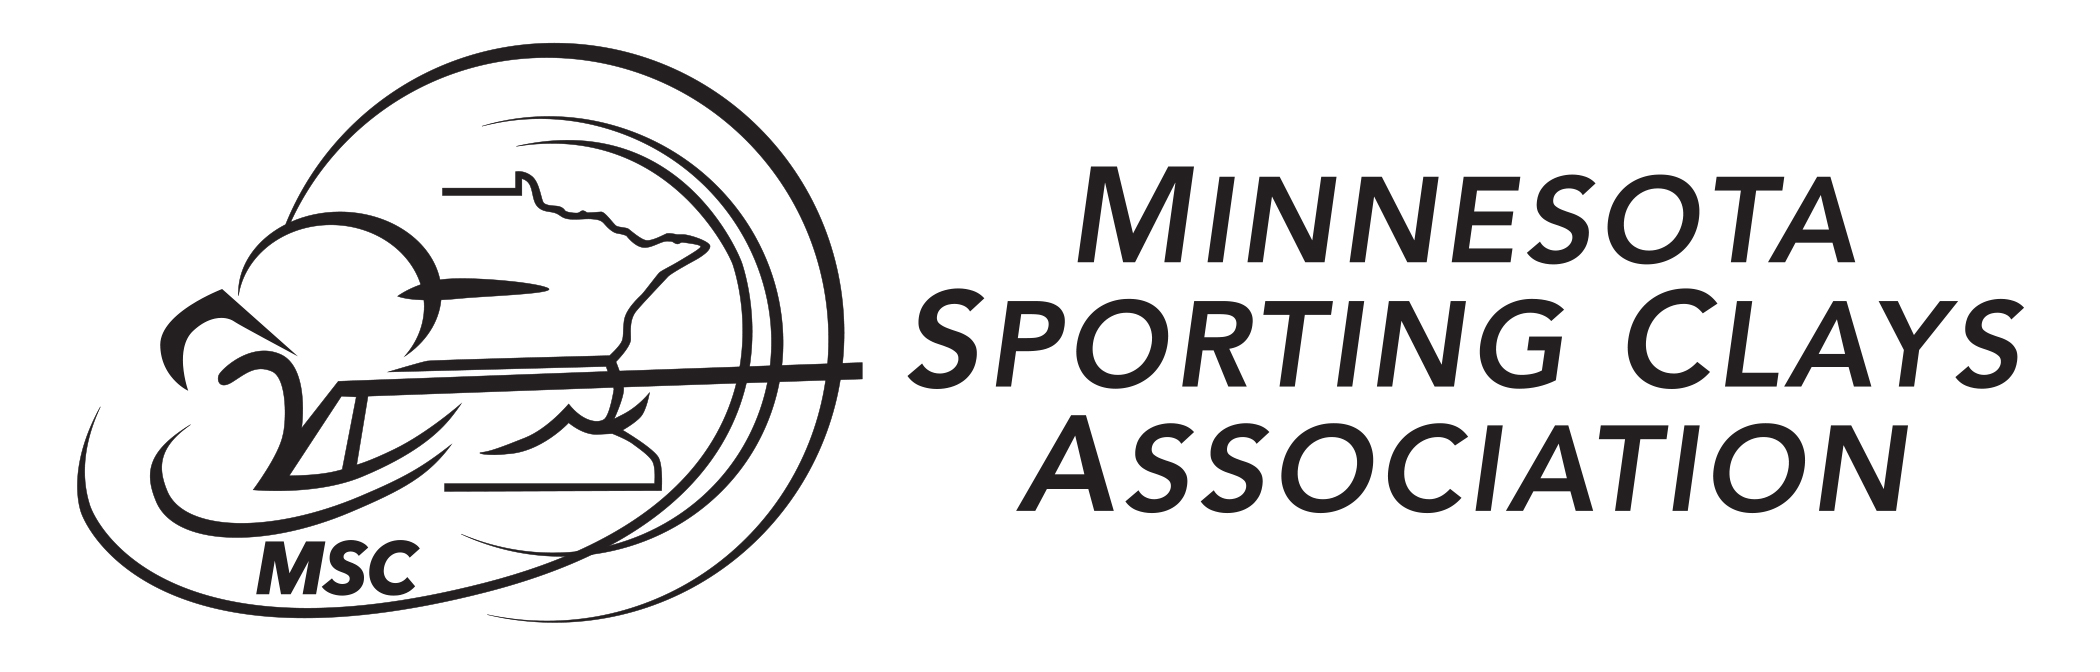 MSCA_Banner_logo